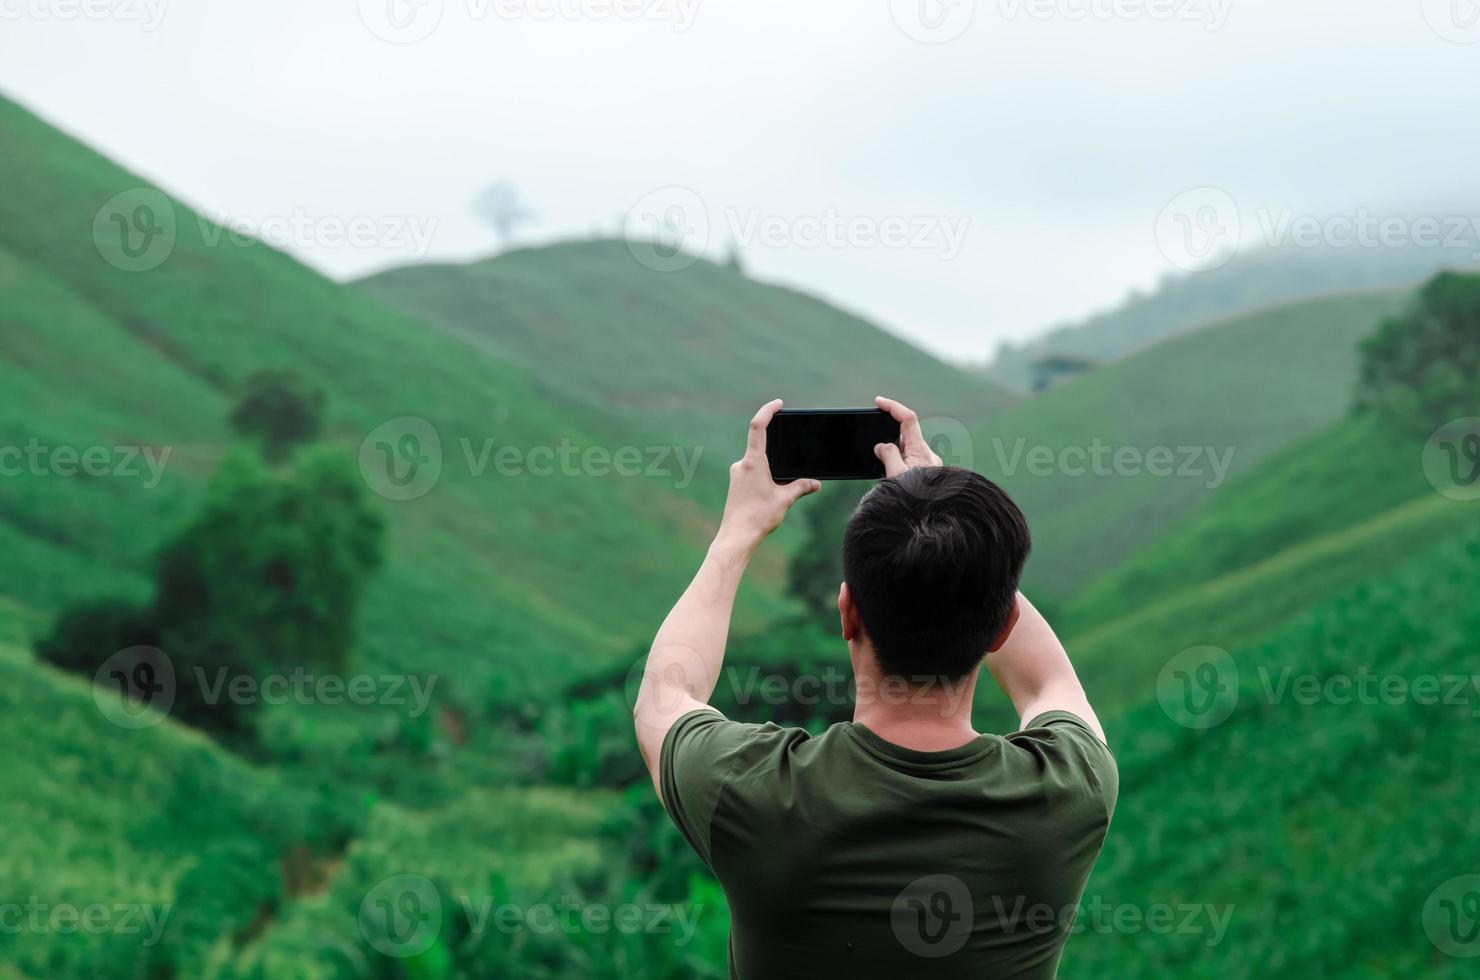 una persona di sesso maschile che usa il telefono cellulare per scattare una foto della montagna verde con nebbia al mattino.